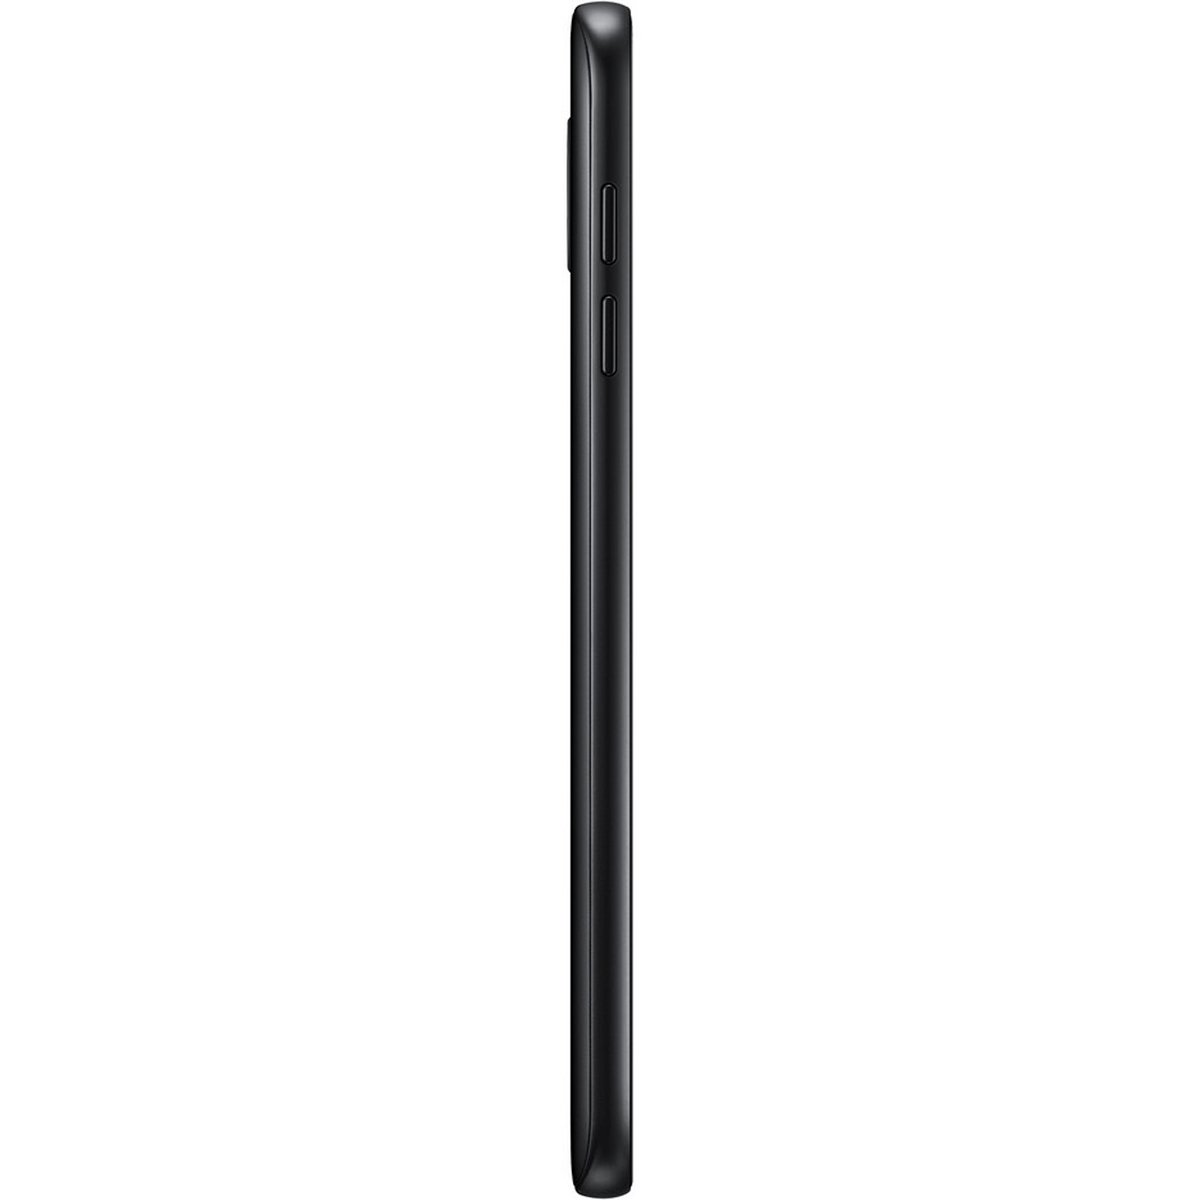 Samsung Galaxy J4 SM-J400FZ 16GB Black